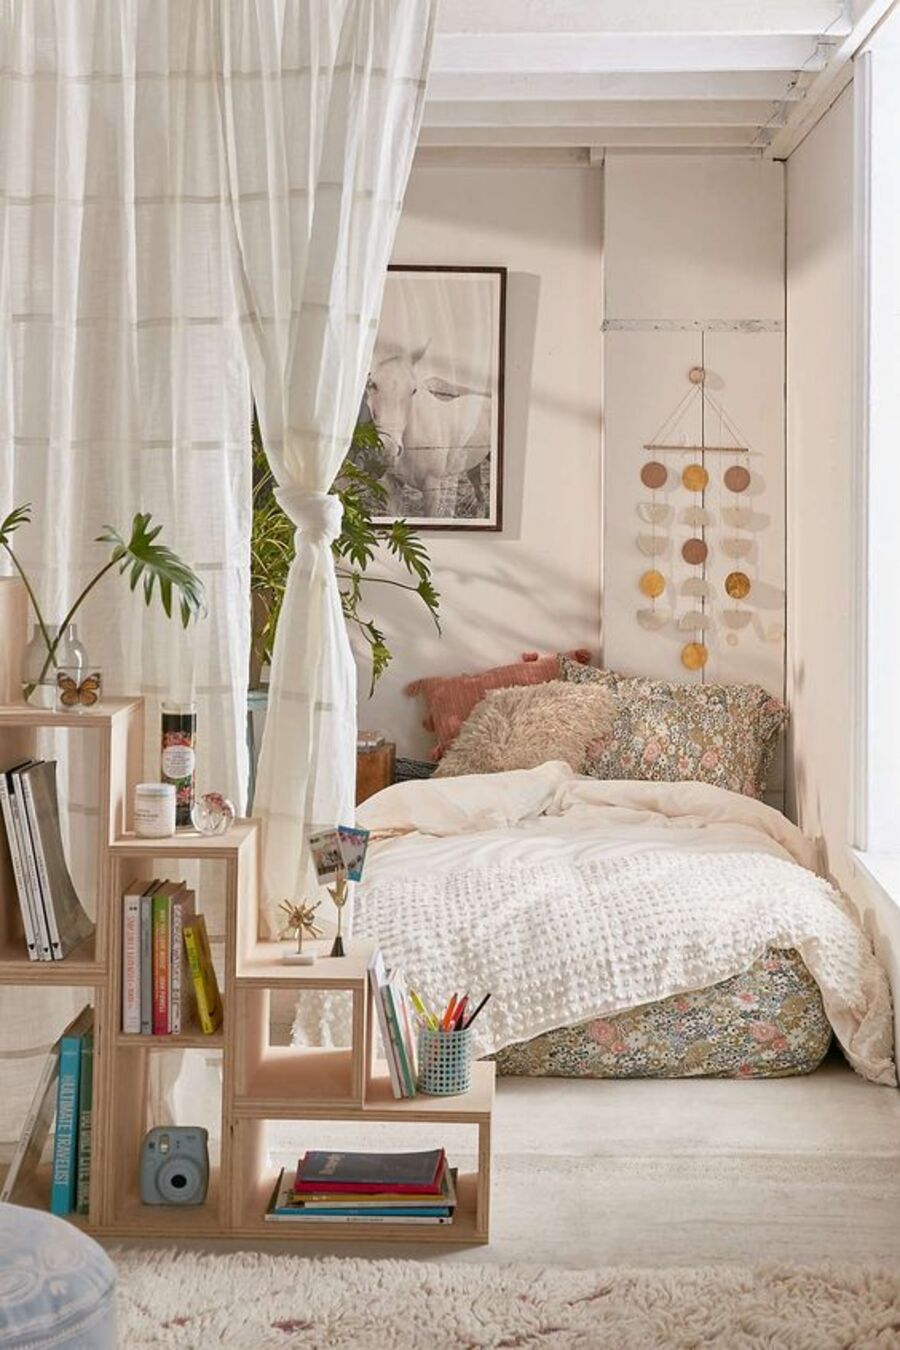 Un hogar estilo estudio con ambientes separados con cortinas de telas en vez de paredes. Por un lado, está el espacio de la cama y, por el otro, una pequeña sala de estar.